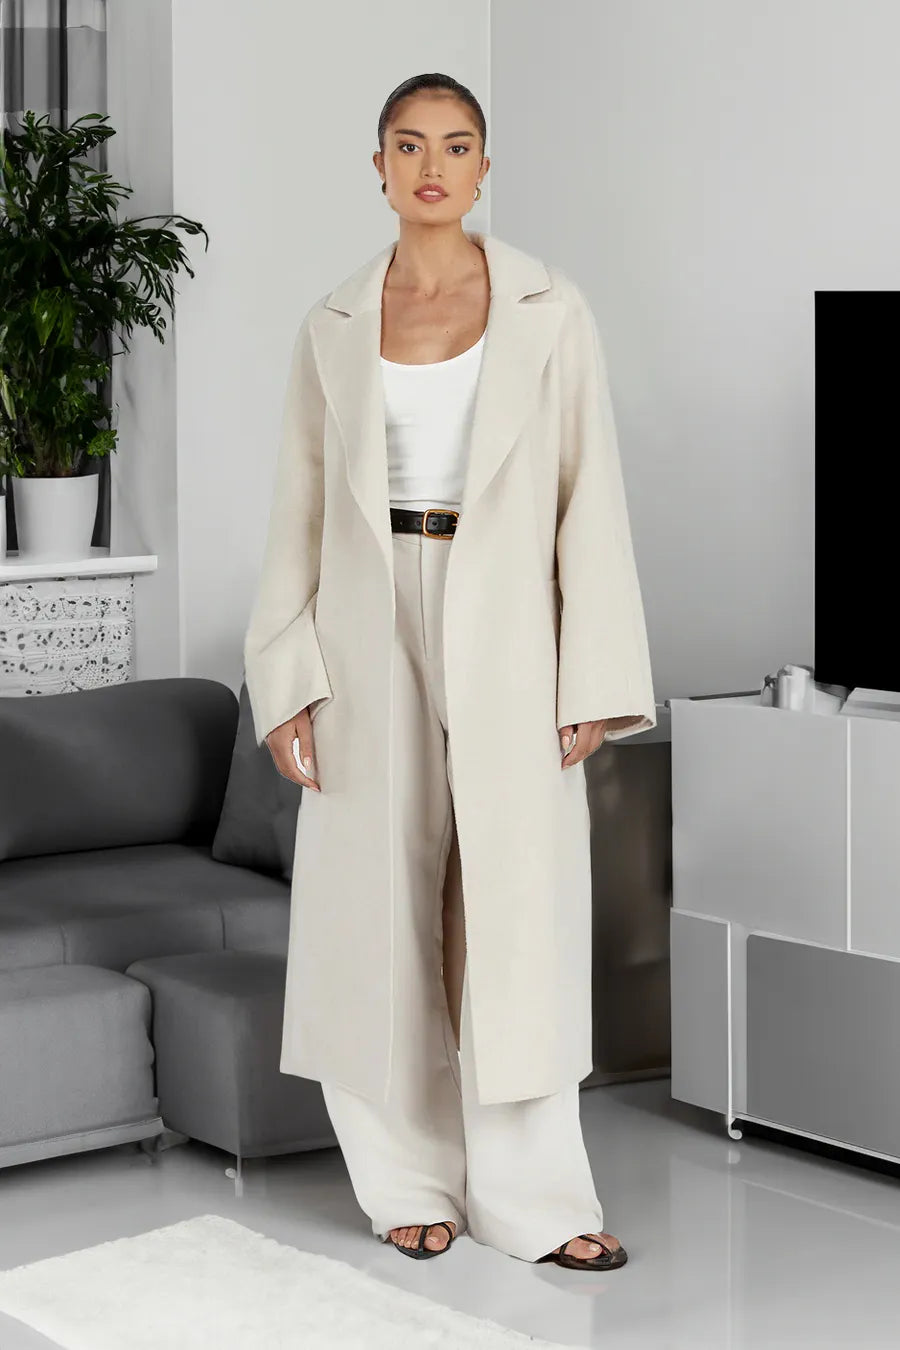 Designer wool coat